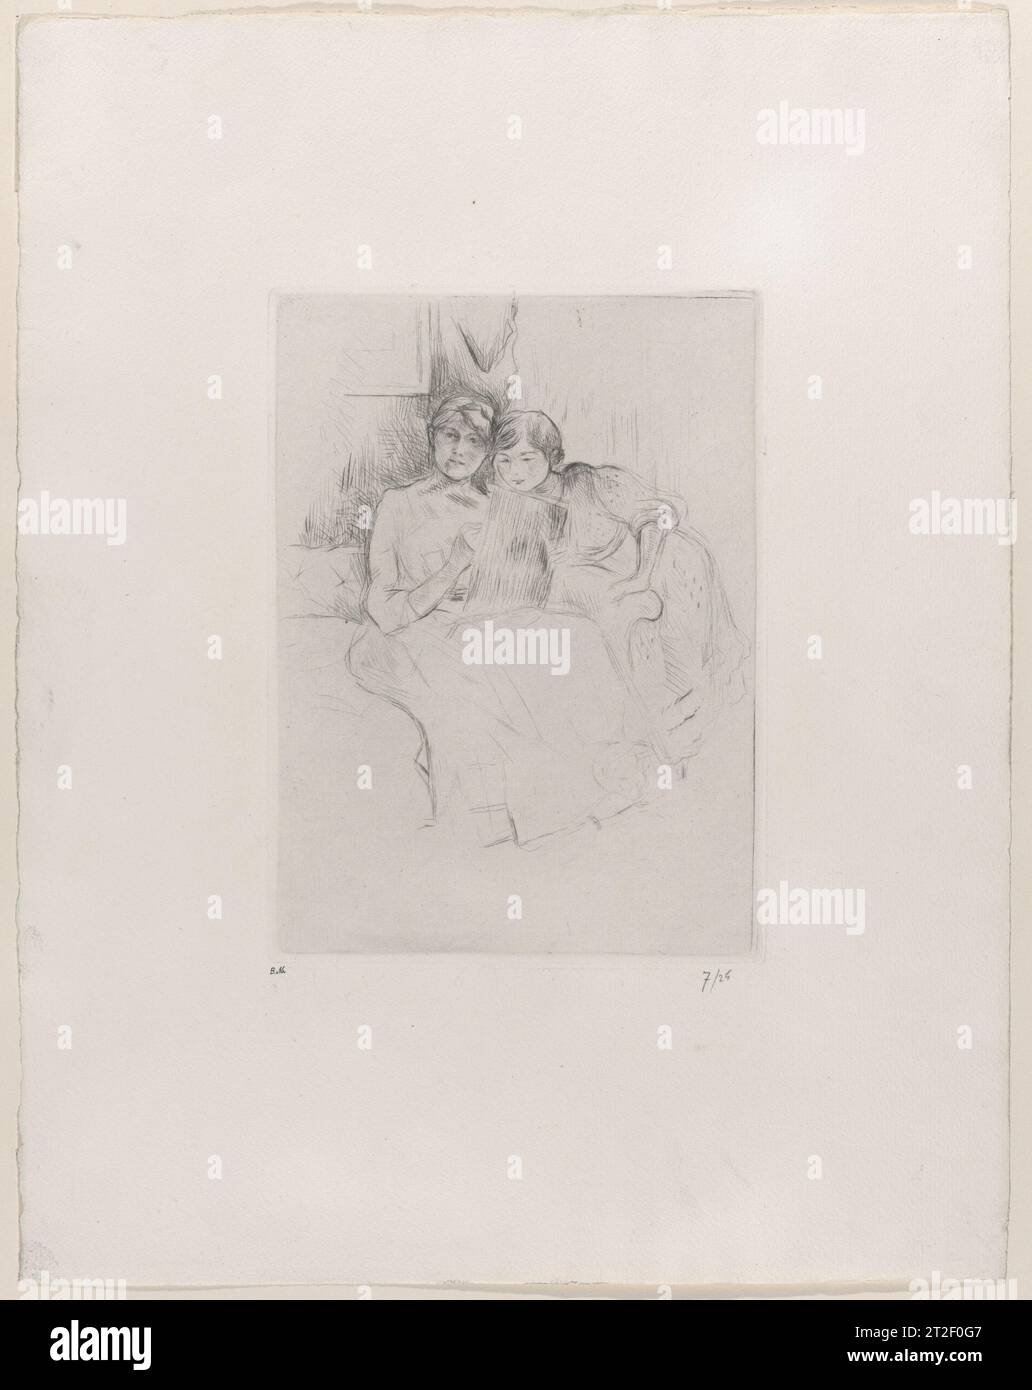 Die Zeichenstunde (Berthe Morisot und ihre Tochter) Berthe Morisot französischer Sitter Julie Manet French 1889 Morisot machte nur acht Trockenpunkte, von denen dieses Selbstporträt das am meisten erreichte ist. Sie zeigt sich dabei, ihr Spiegelbild zu zeichnen, während ihre Tochter Julie Manet über ihre Schulter schaut. Im Laufe ihrer Karriere stellte Morisot Julie mehr als jedes andere Thema dar. Hier vereint sie ihre Doppelrollen als Mutter und Künstlerin in einem Bild. Ihre Abdrücke wurden zu Lebzeiten nie veröffentlicht. Für die posthume Ausgabe betitelte Julie dieses Werk „die Zeichenstunde“. Mehr anzeigen. Stockfoto